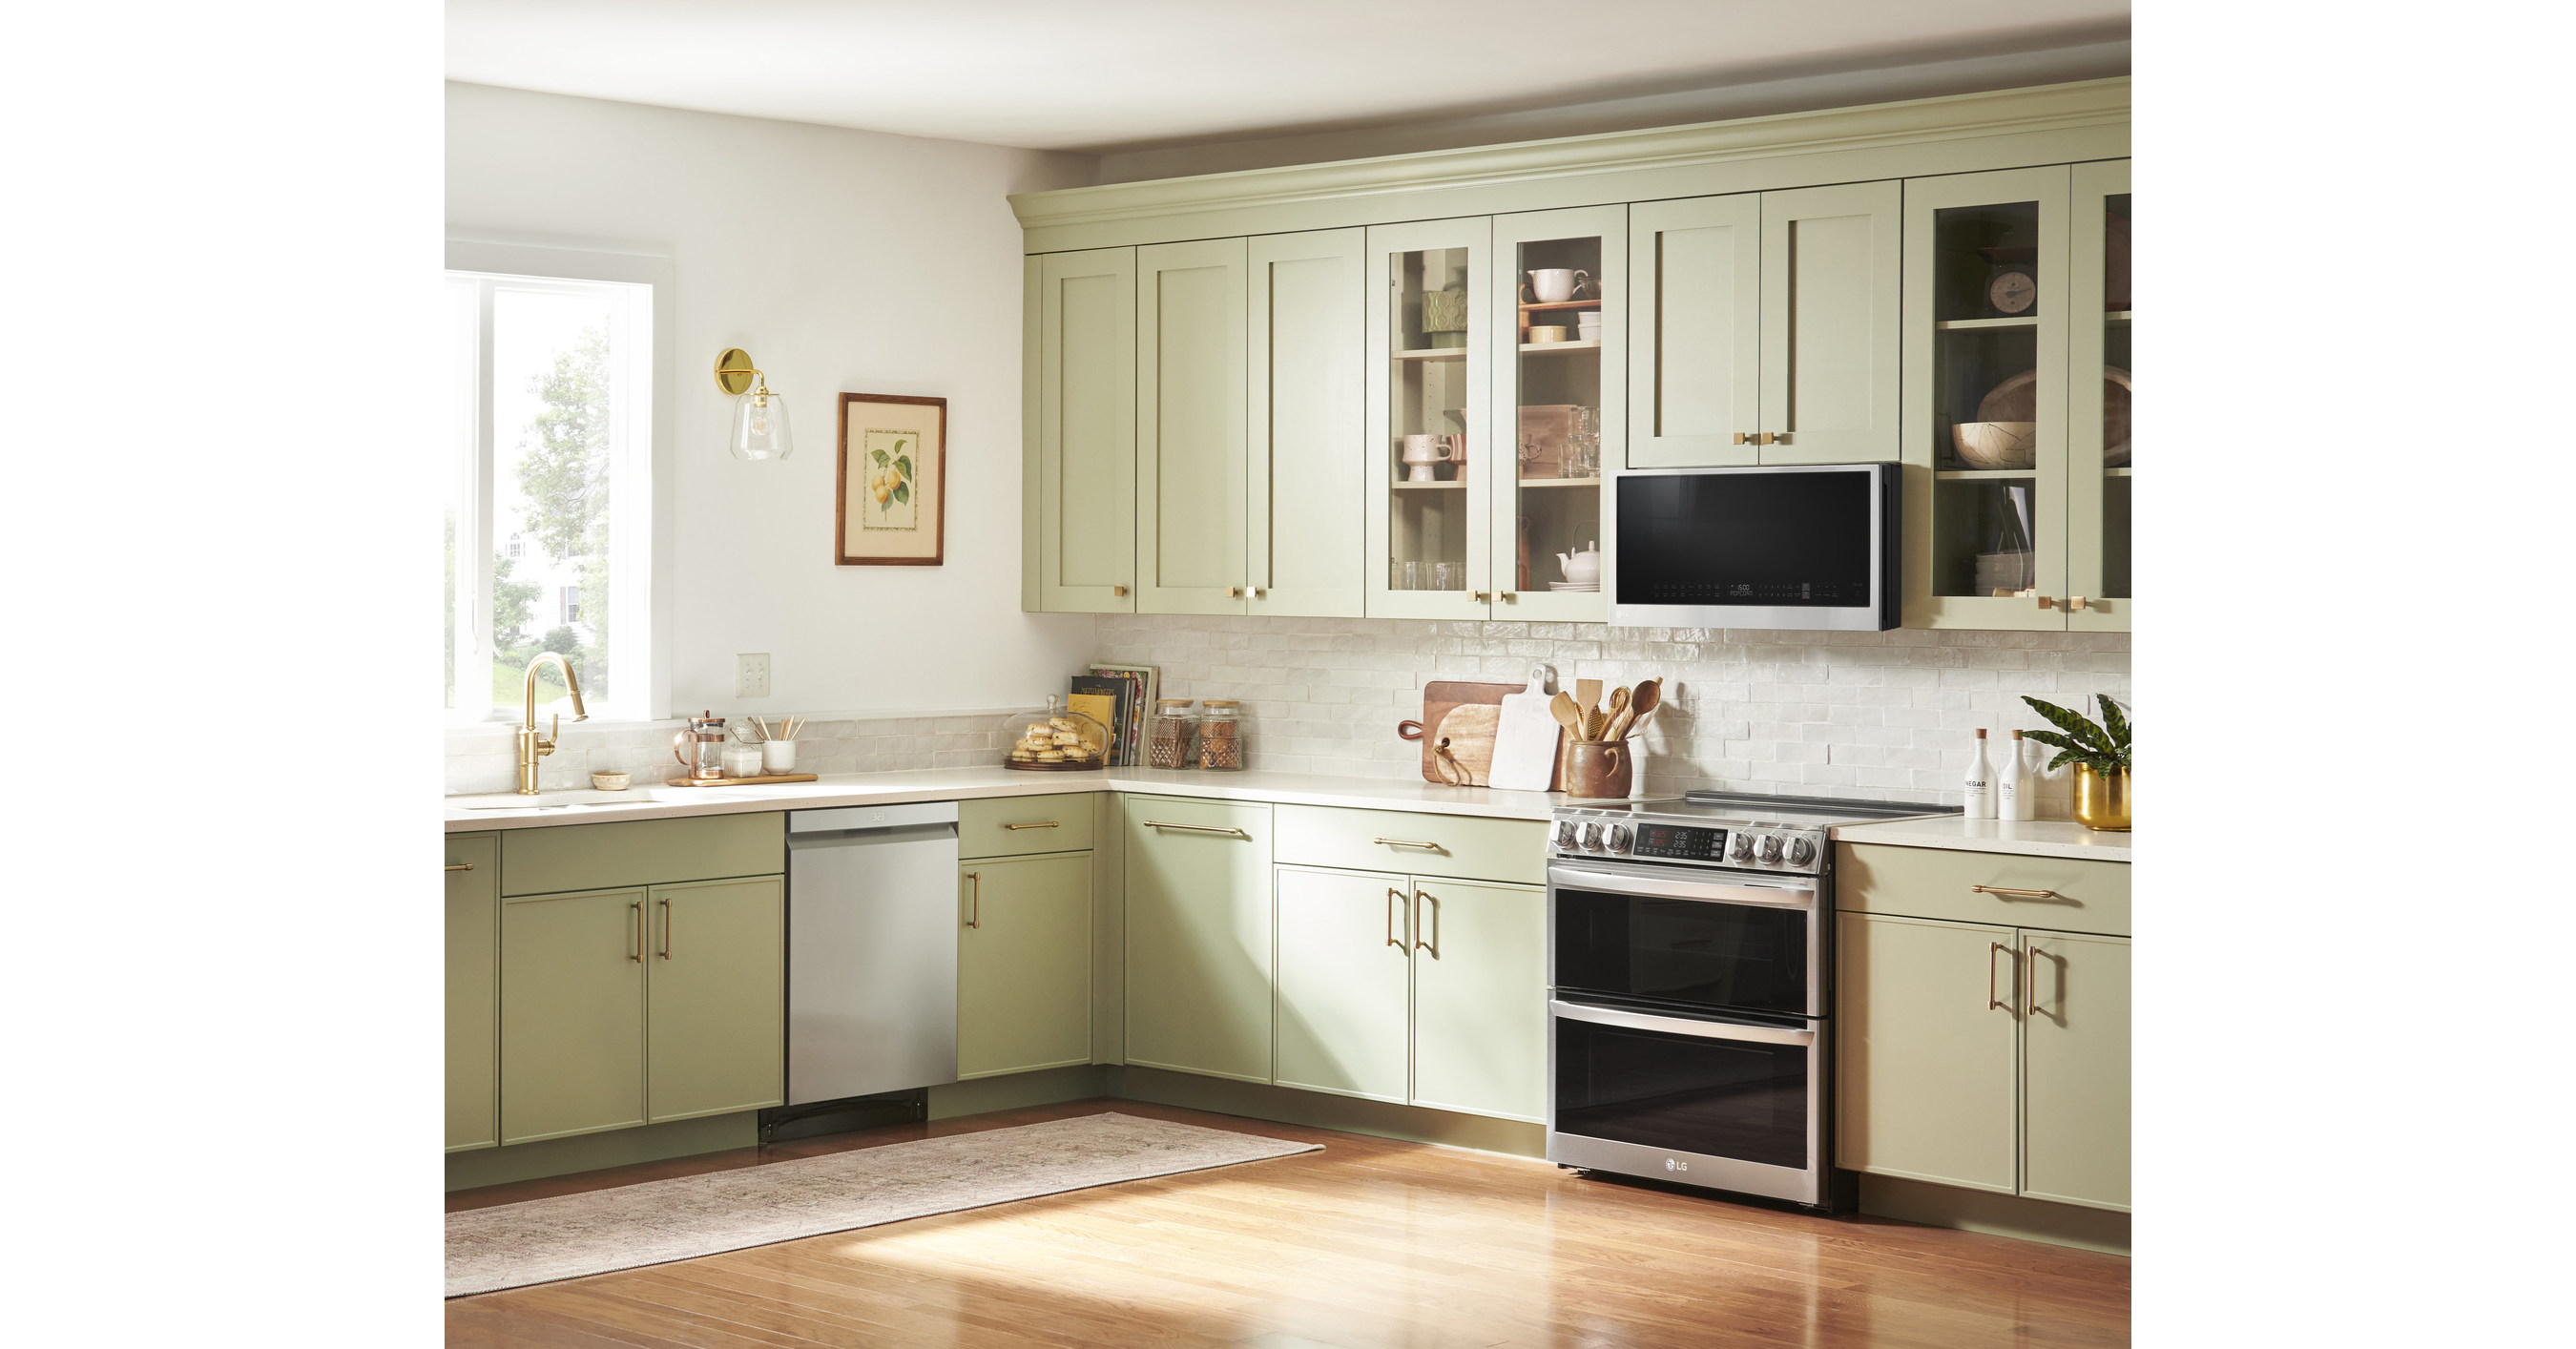 LG Kitchen Appliances: Cooking Appliances